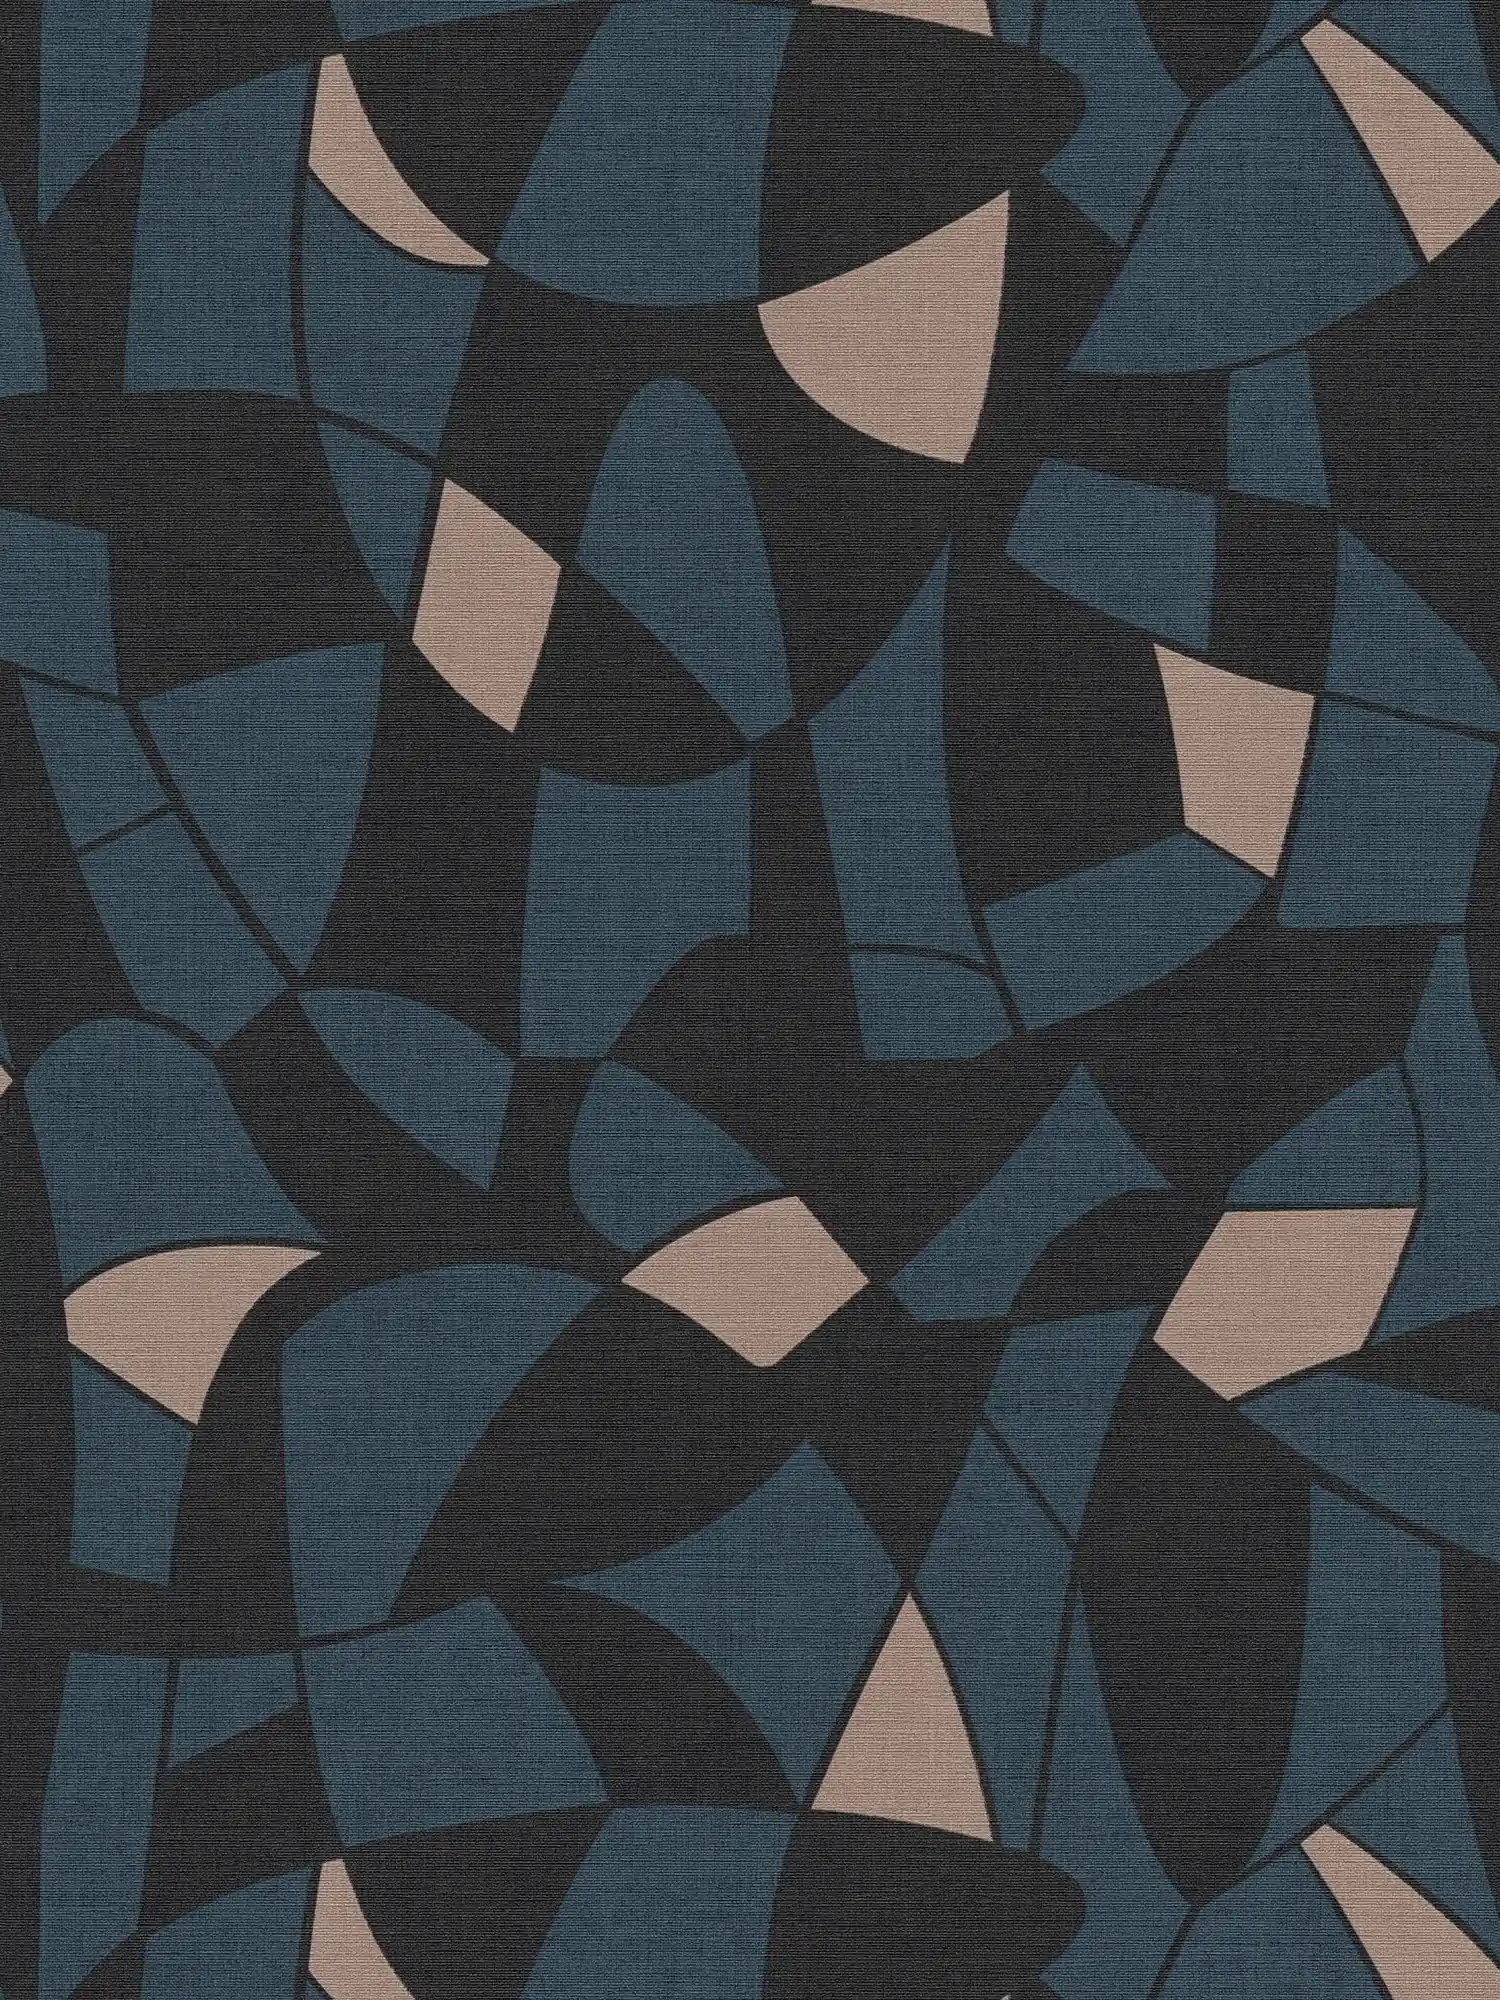 Vliesbehang in donkere kleuren in een abstract patroon - zwart, blauw, beige
